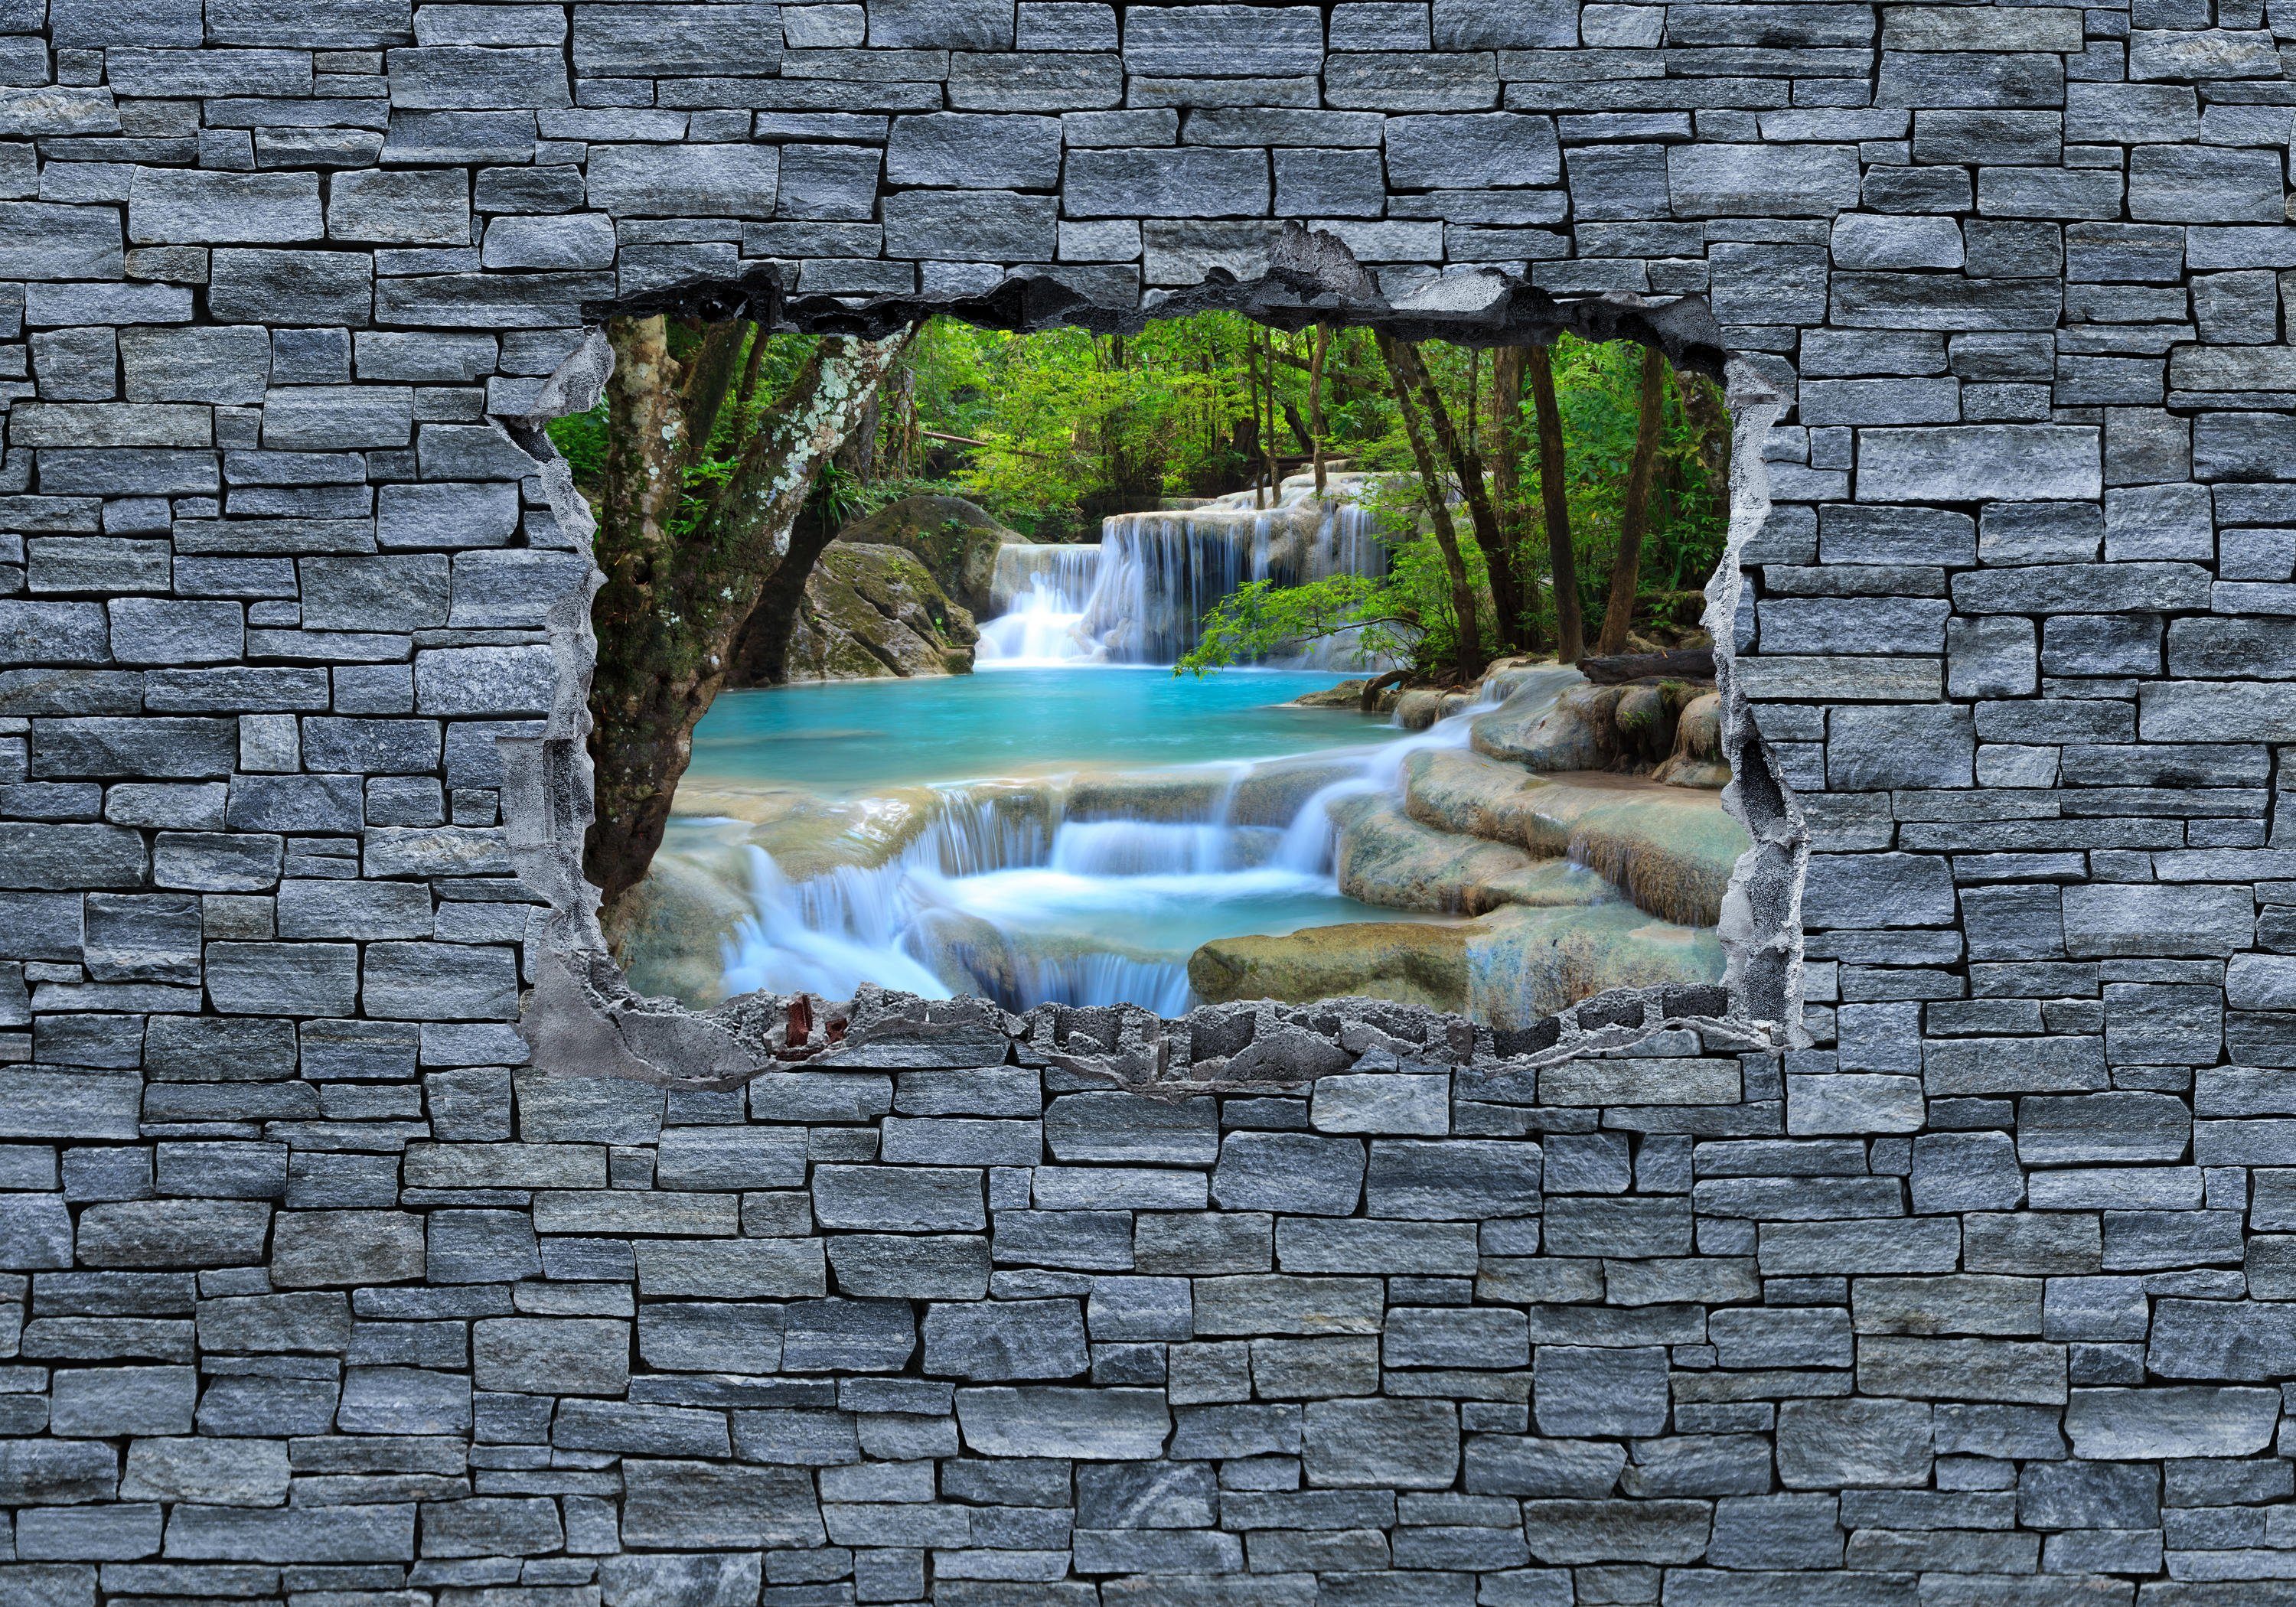 - Fototapete im Steinmauer, Thailand matt, 3D Motivtapete, Wandtapete, Wasserfall wandmotiv24 Erawan glatt, Vliestapete